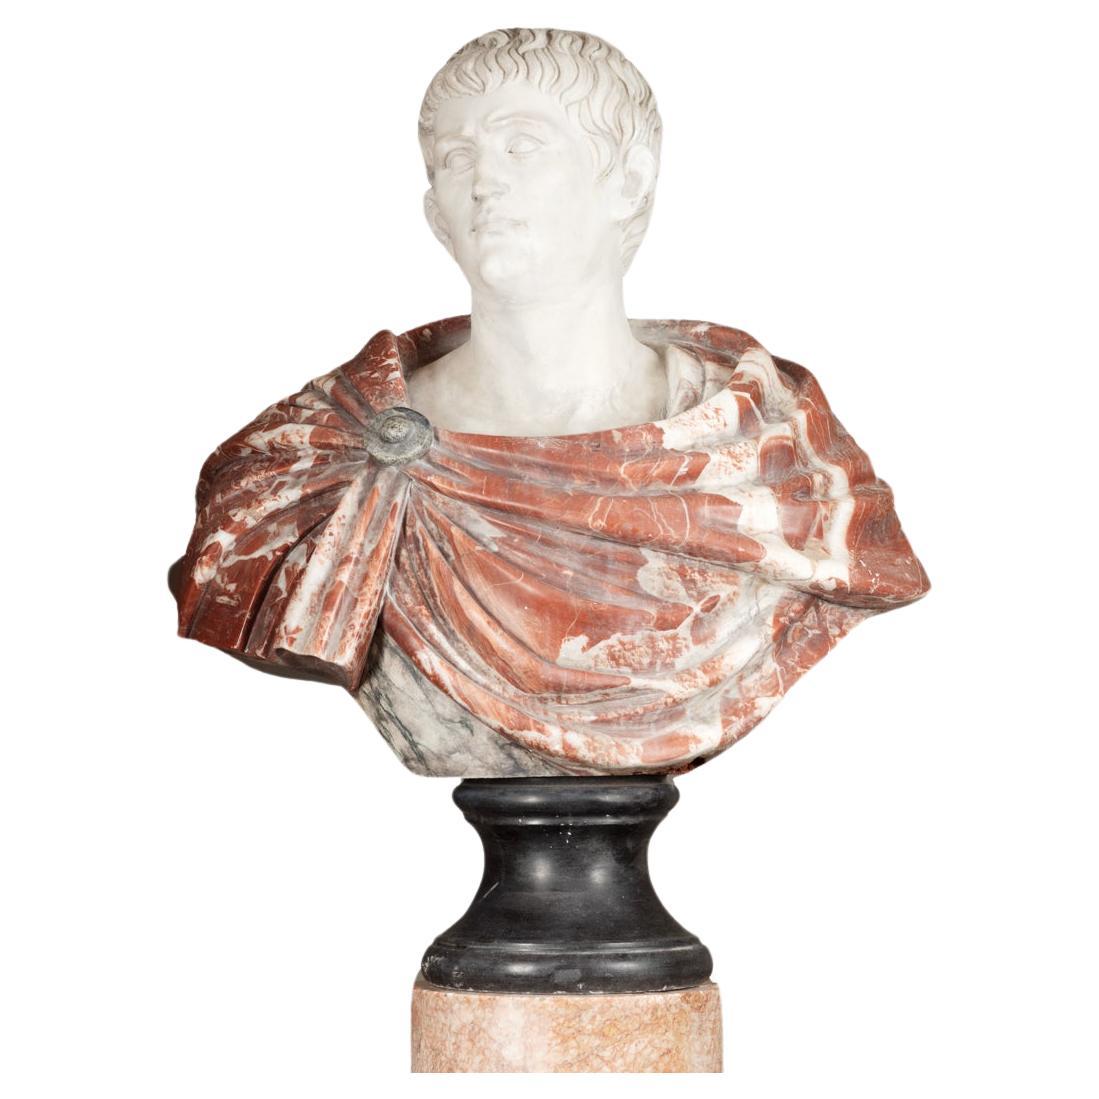 Grand buste italien en marbre du 18ème siècle représentant Caesar Augustus